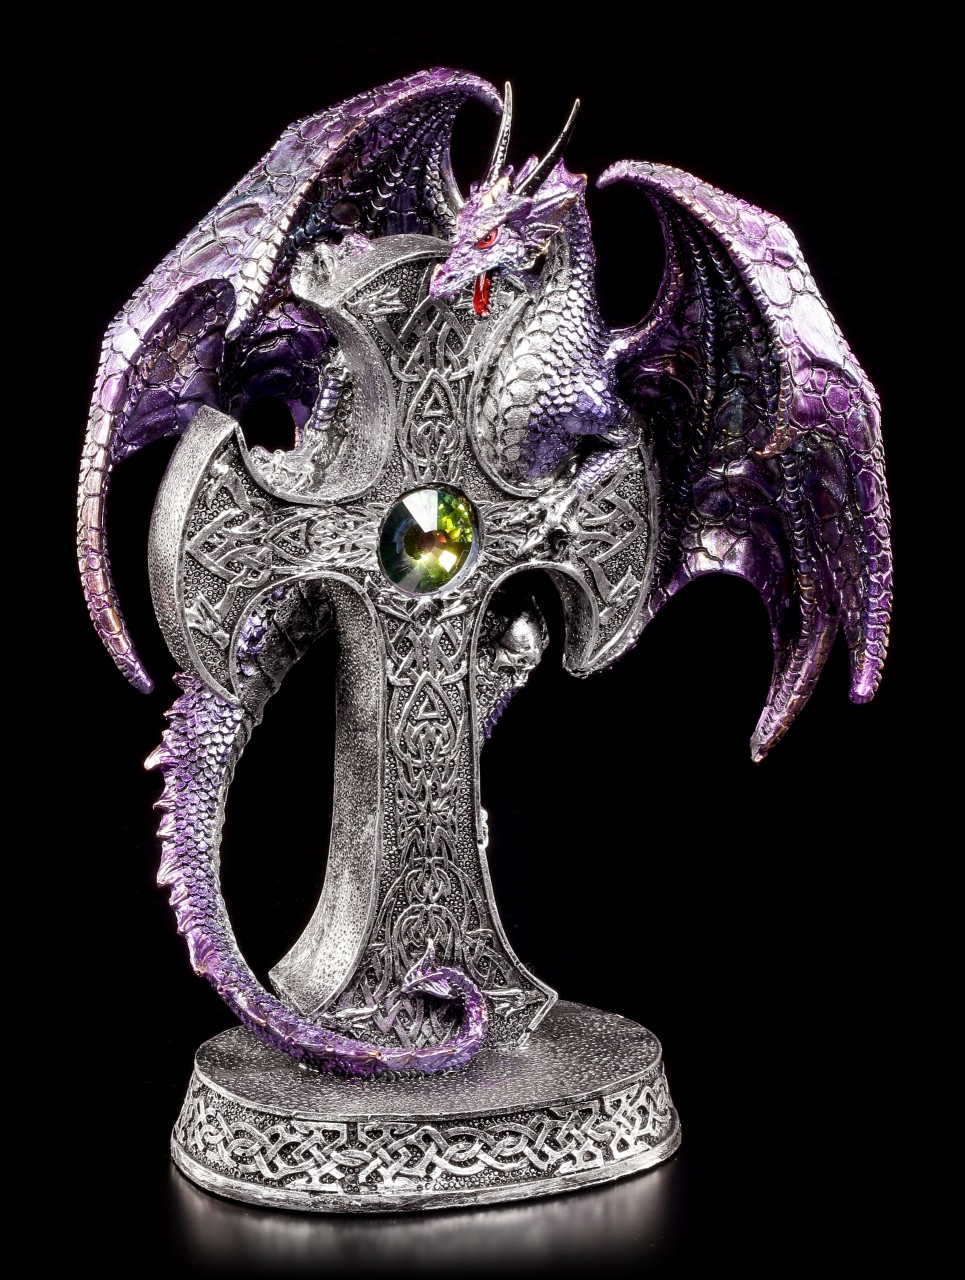 Dragon Figurine - Tiamat embraces Celtic Cross